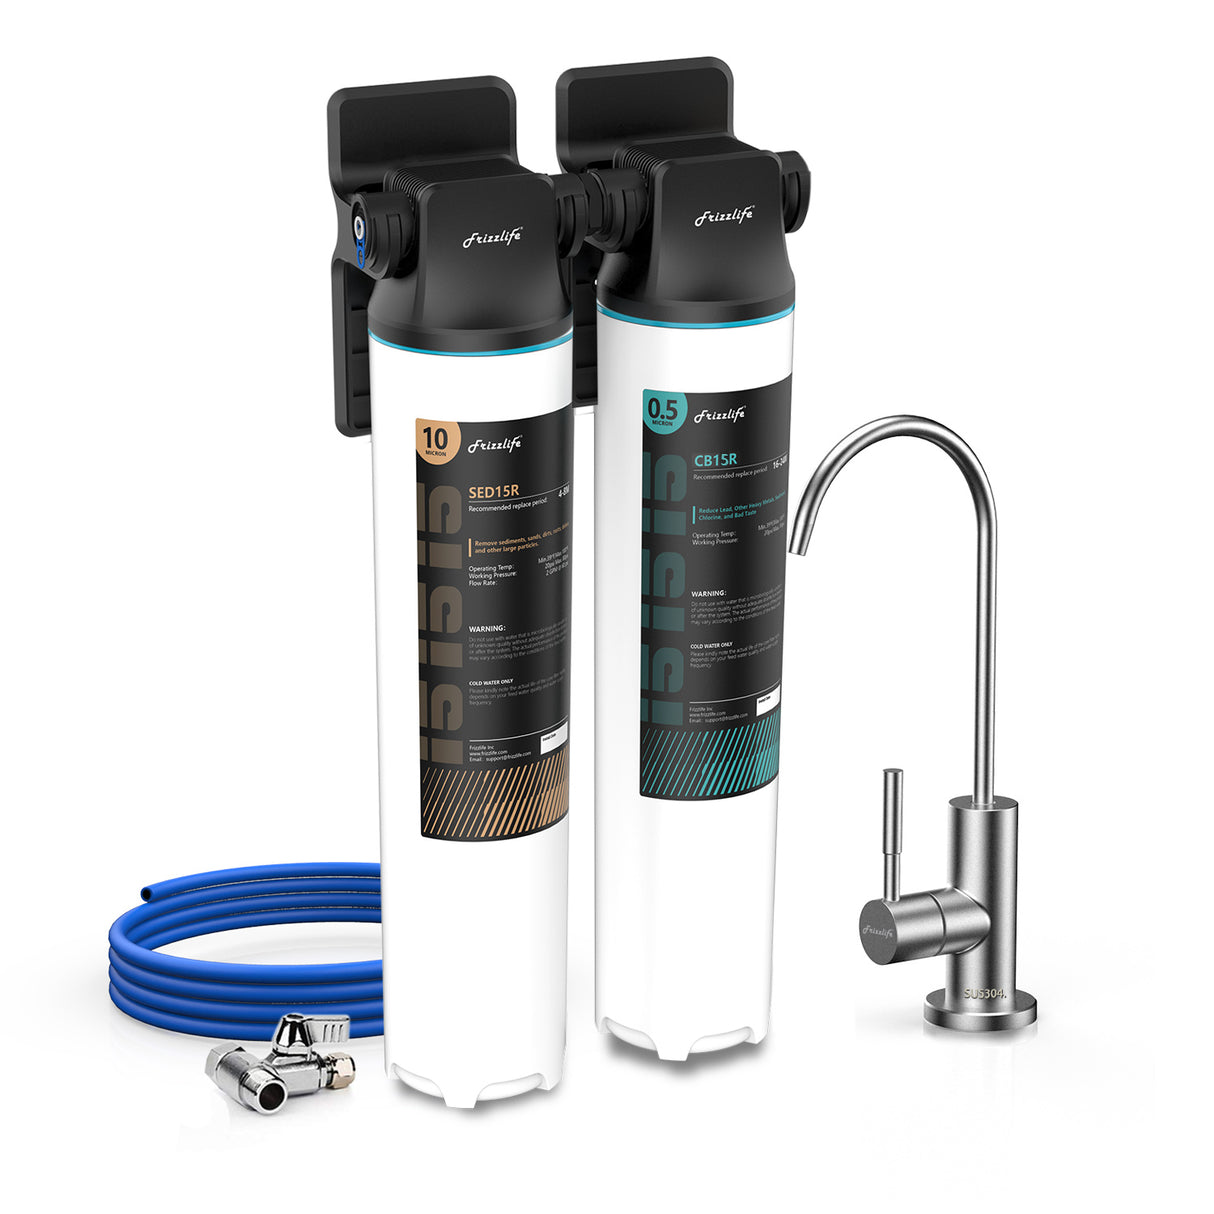 Frizzlife DW10F Sistema de filtro de agua para debajo del fregadero con grifo de níquel cepillado, elementos certificados por NSF/ANSI 53 y 42